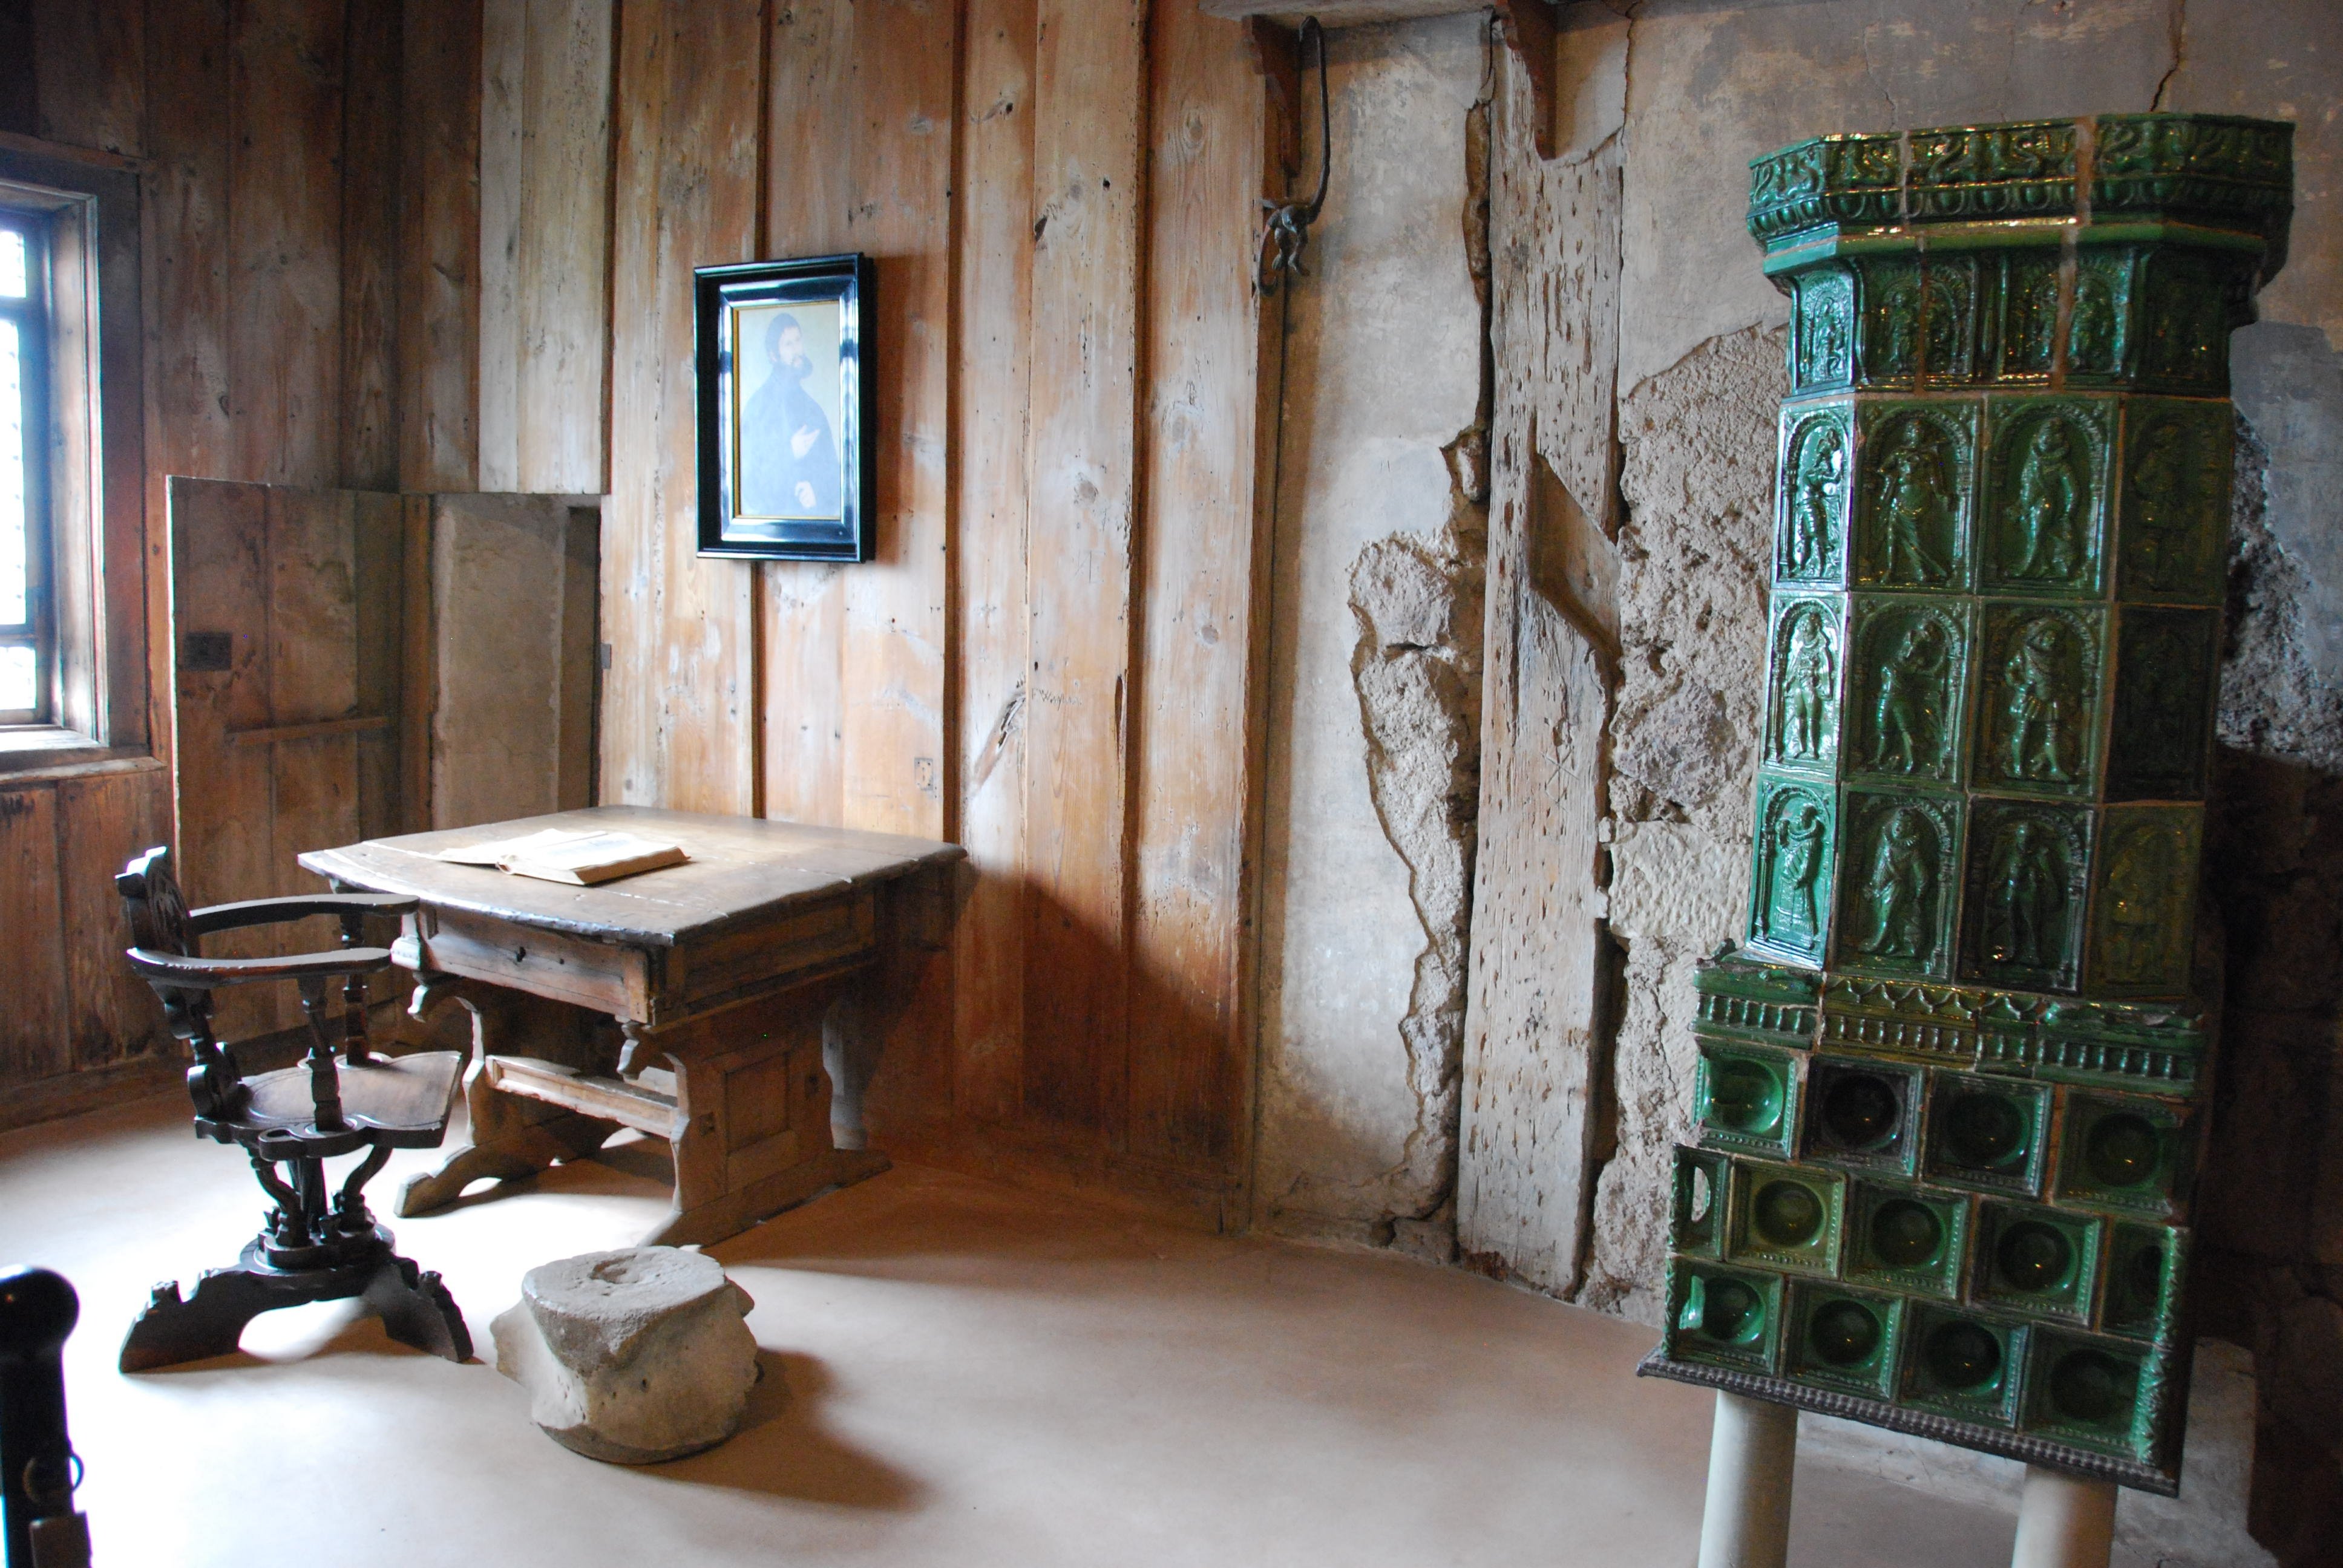 МІСЦЕ ДІЇ: Кімната Лютера в замку Вартбург, де він перевів Новий Завіт на німецьку мову